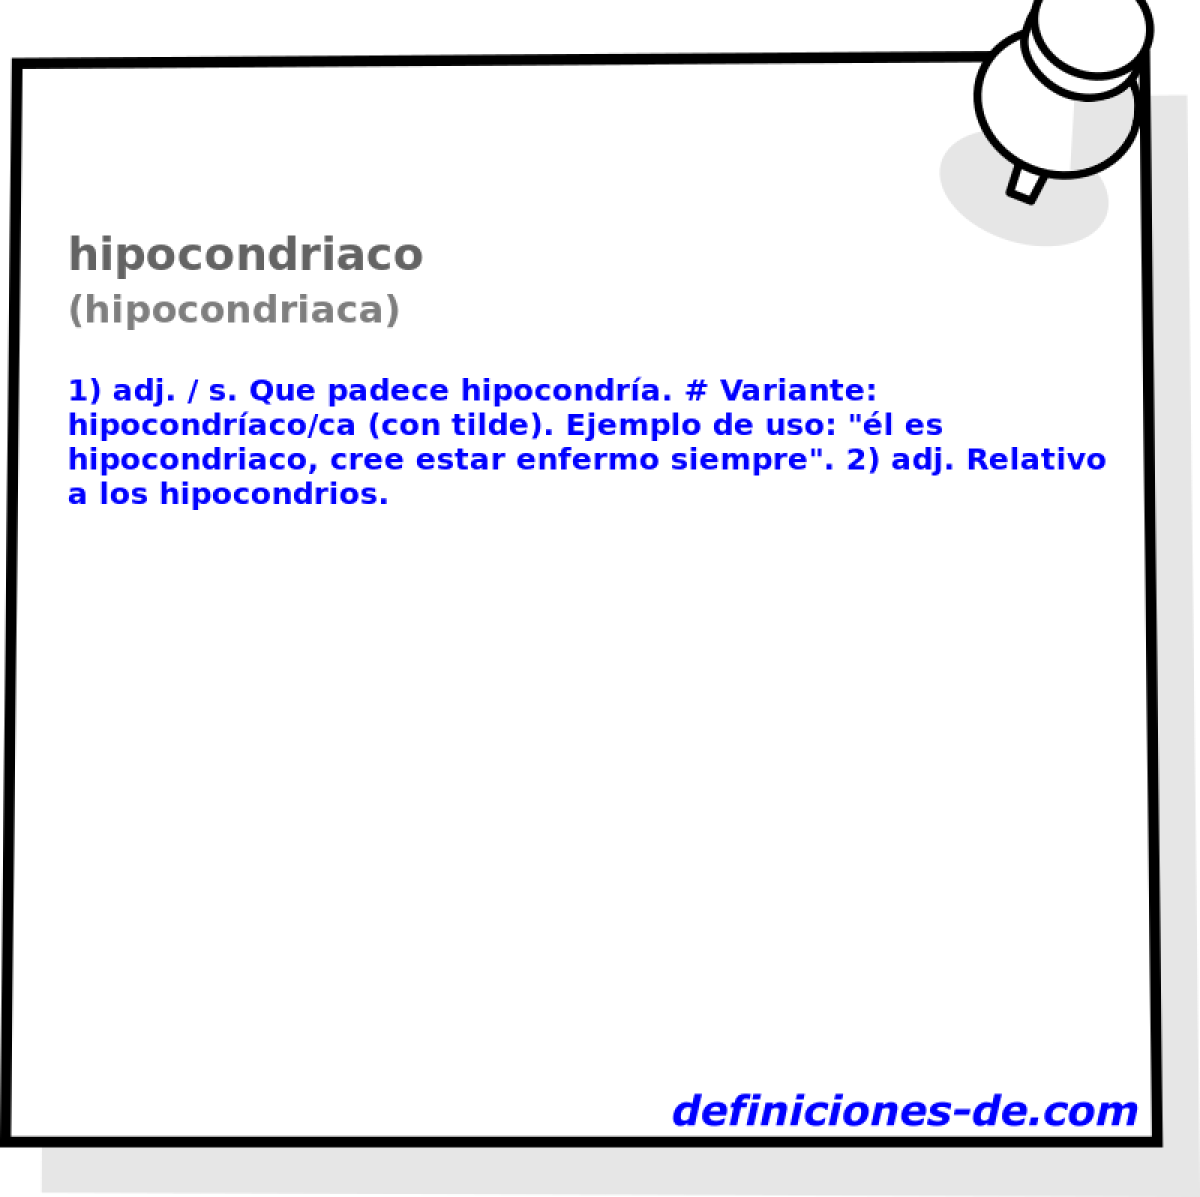 hipocondriaco (hipocondriaca)